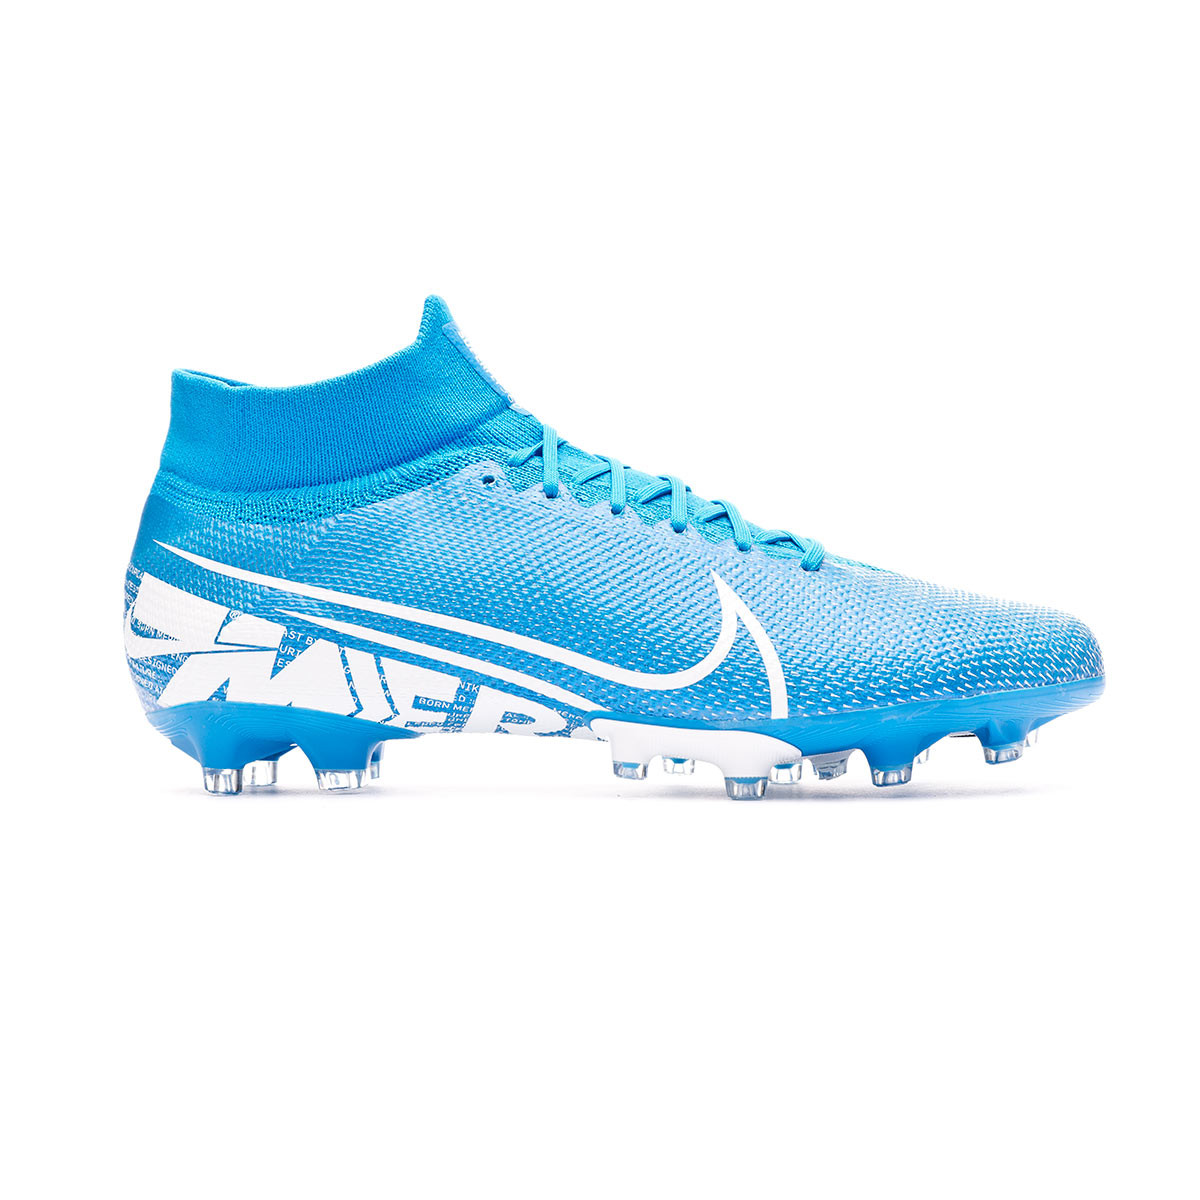 Nike Men 's Superfly 7 Pro Fg Footbal Shoes Amazon.co.uk.